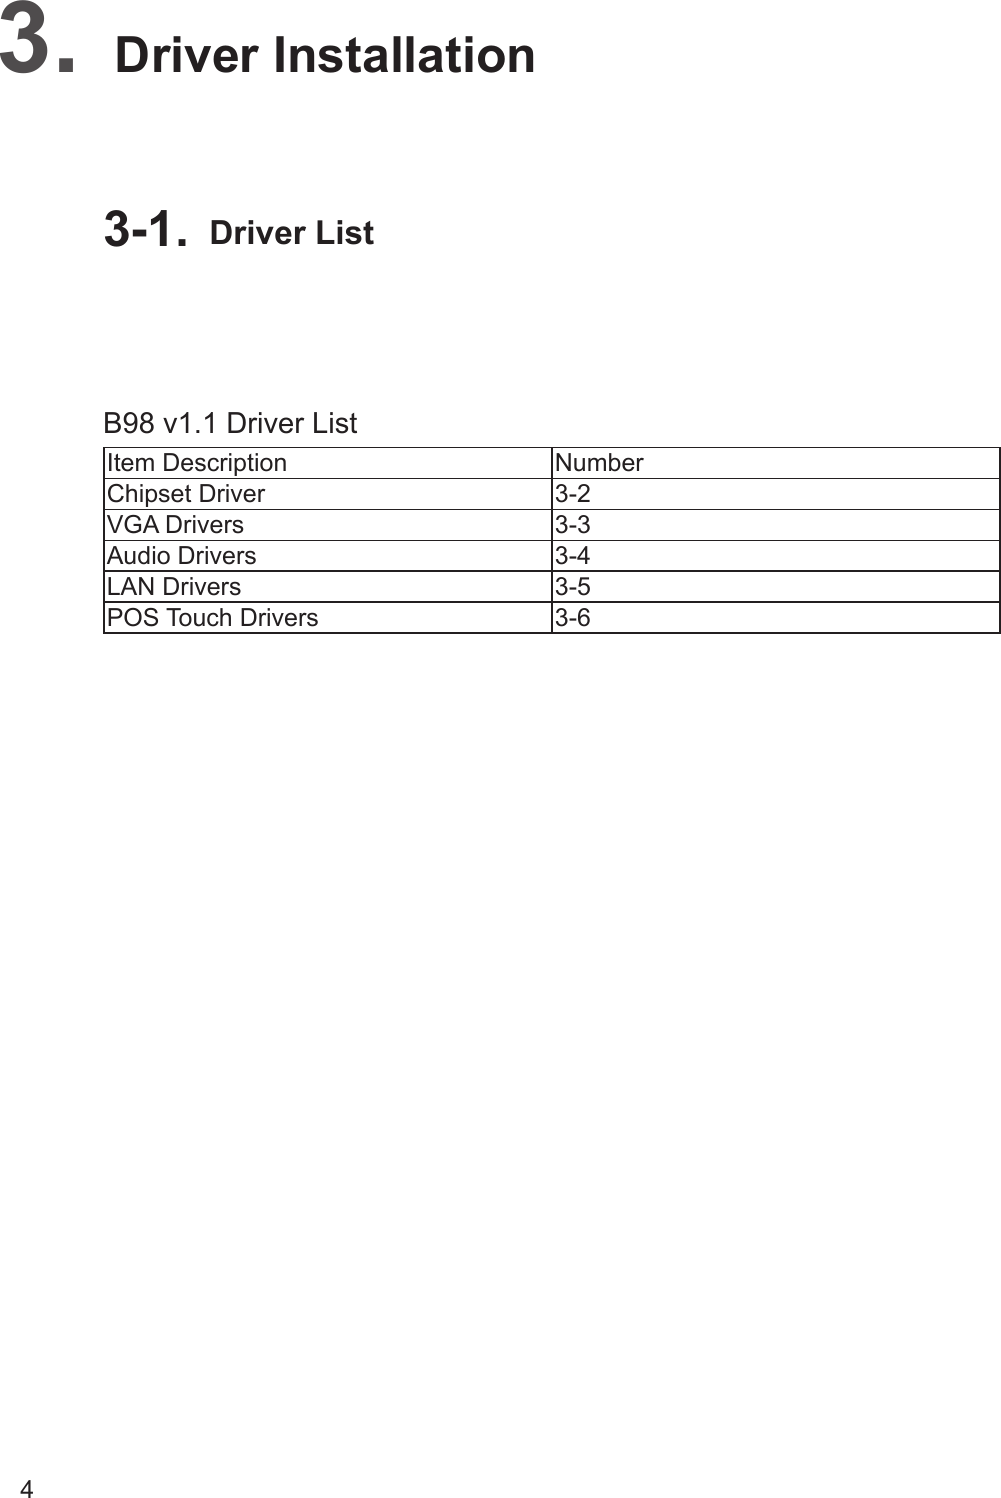 4Item Description NumberChipset Driver 3-2VGA Drivers 3-3Audio Drivers 3-4LAN Drivers 3-5POS Touch Drivers 3-6B98 v1.1 Driver ListDriver Installation3. Driver List3-1. 